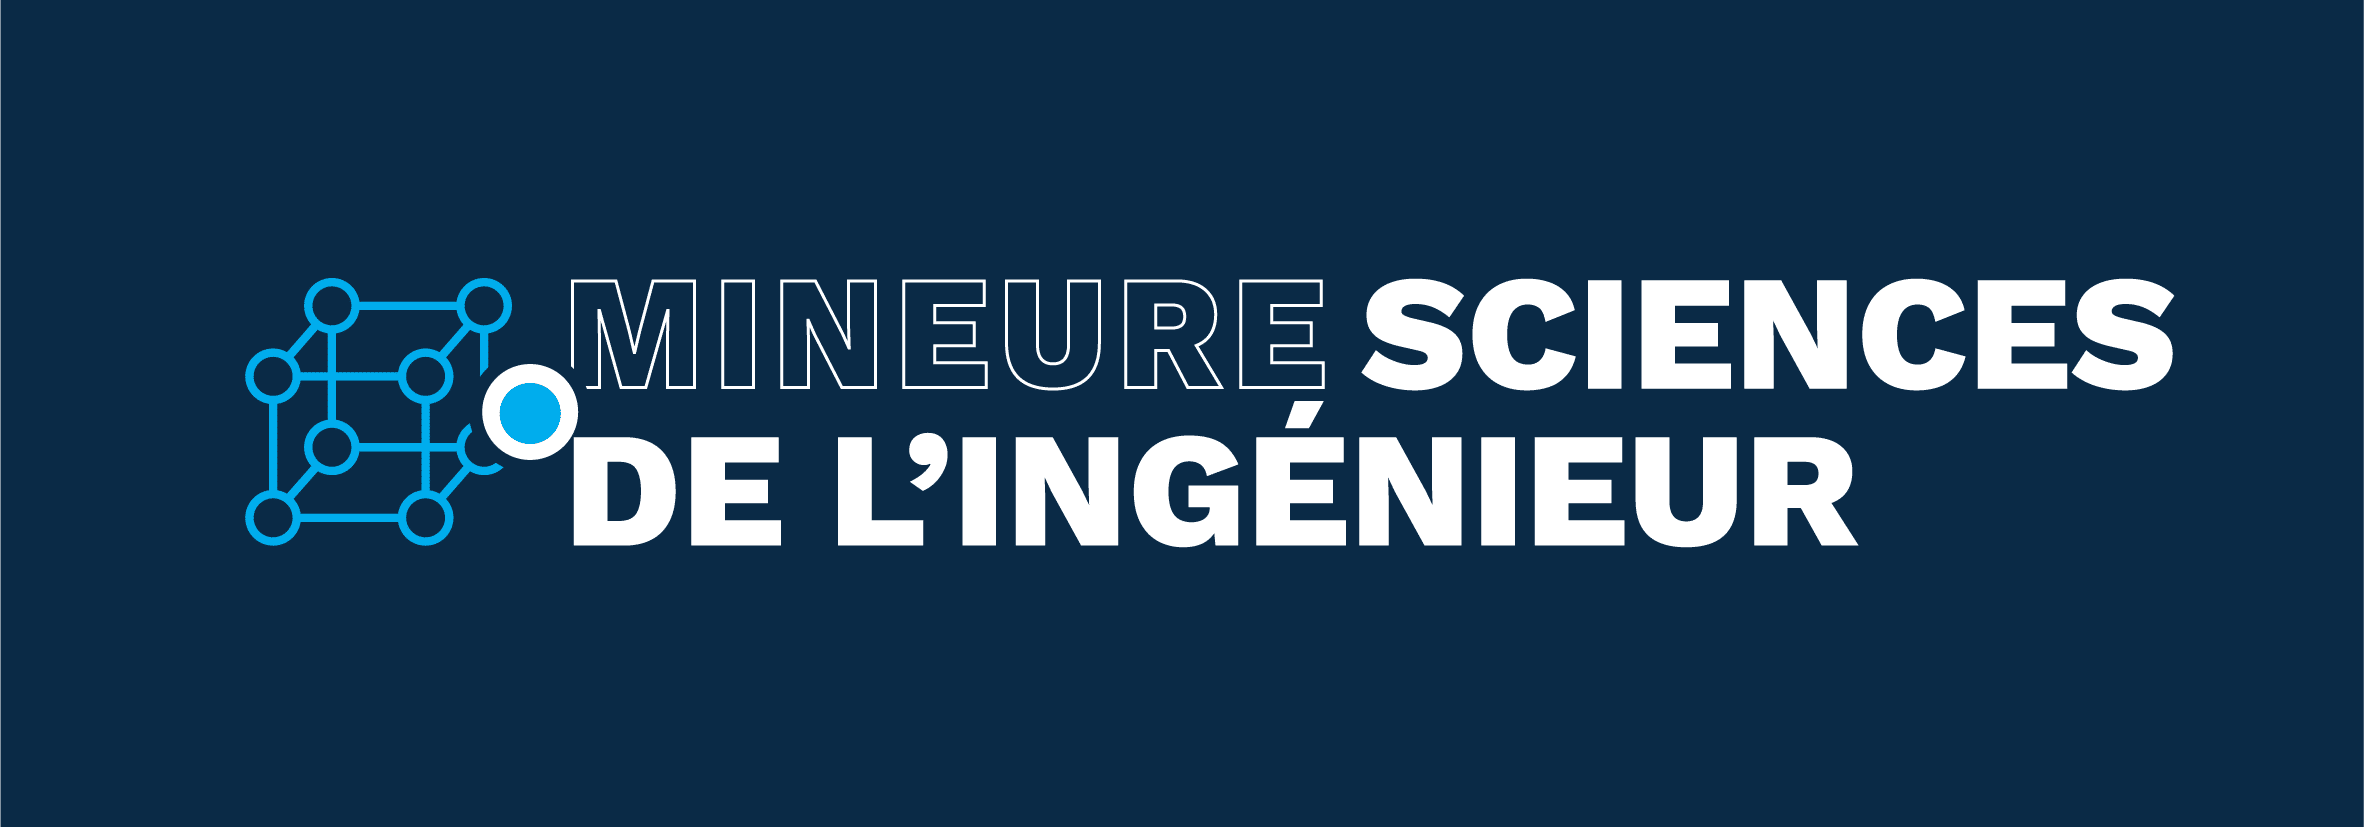 Mineure Sciences de l'Ingénieur Pass Besançon : tout savoir !